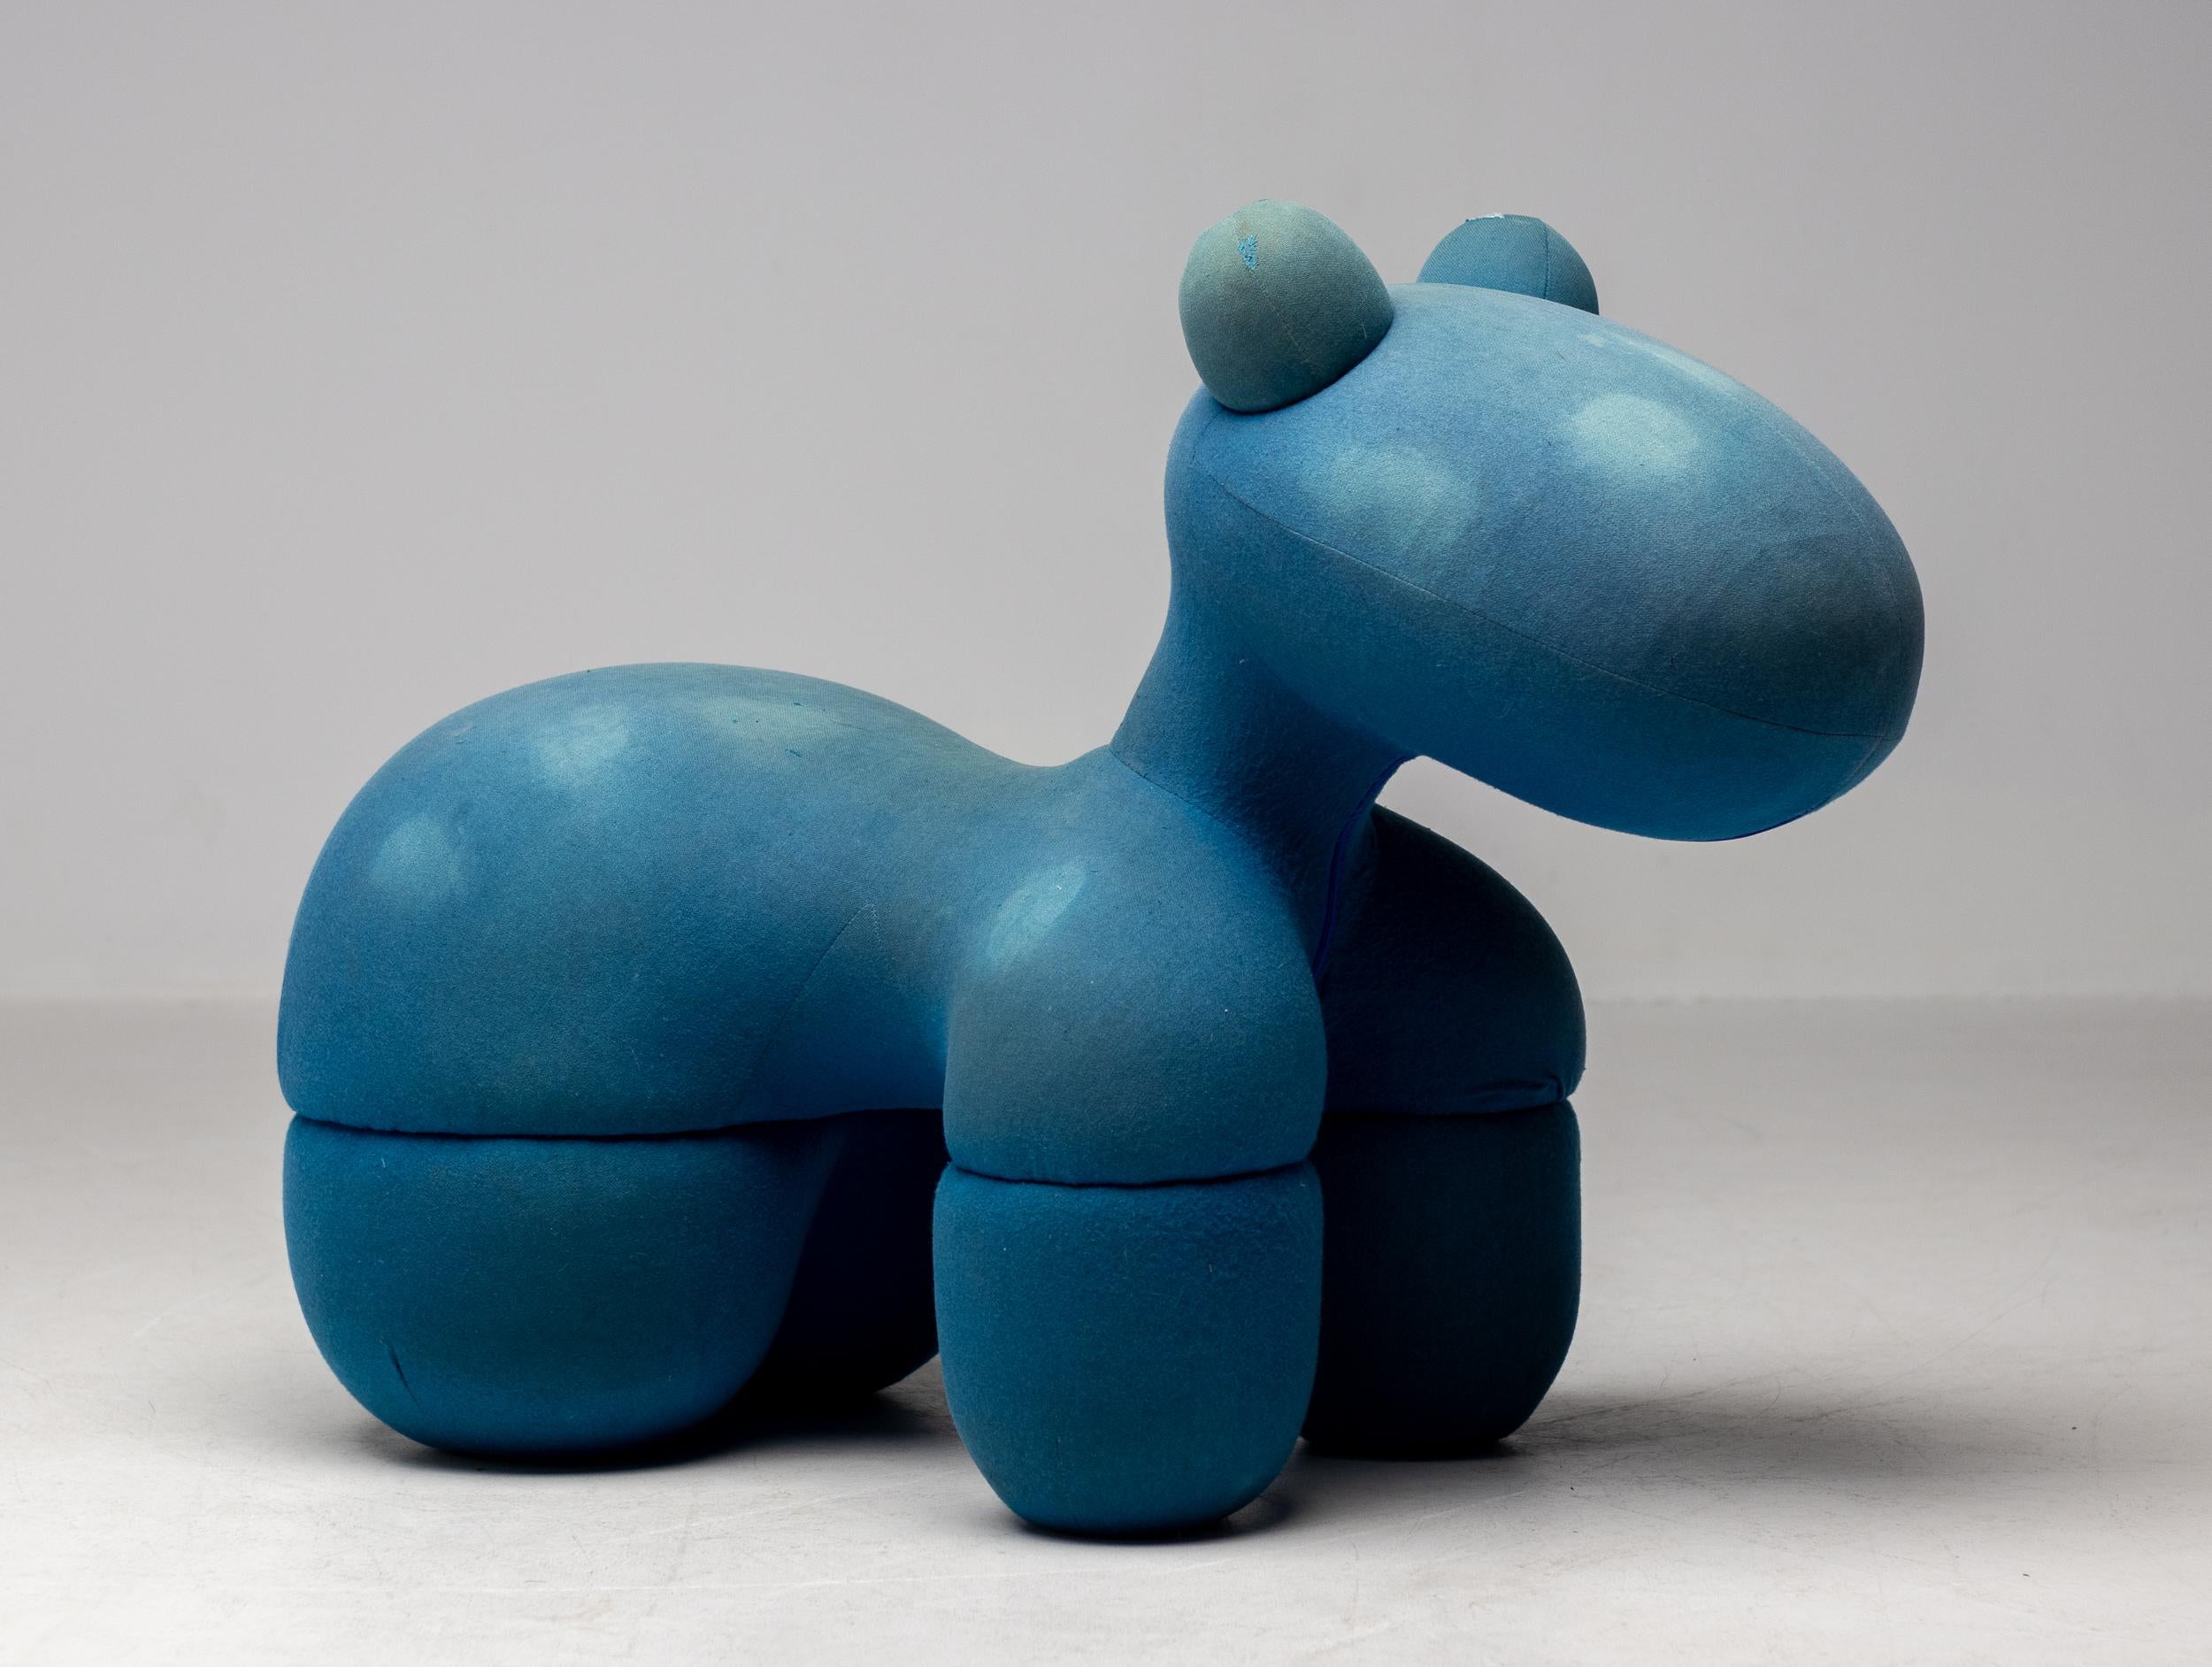 Seltener, verspielter und ikonischer Pony Chair des Designers Eero Aarnio in original blauem Stoff. Der Pony Chair wurde 1973 von dem finnischen Designer entworfen und ist seither ein fester Bestandteil des zeitgenössischen Designs. Interner